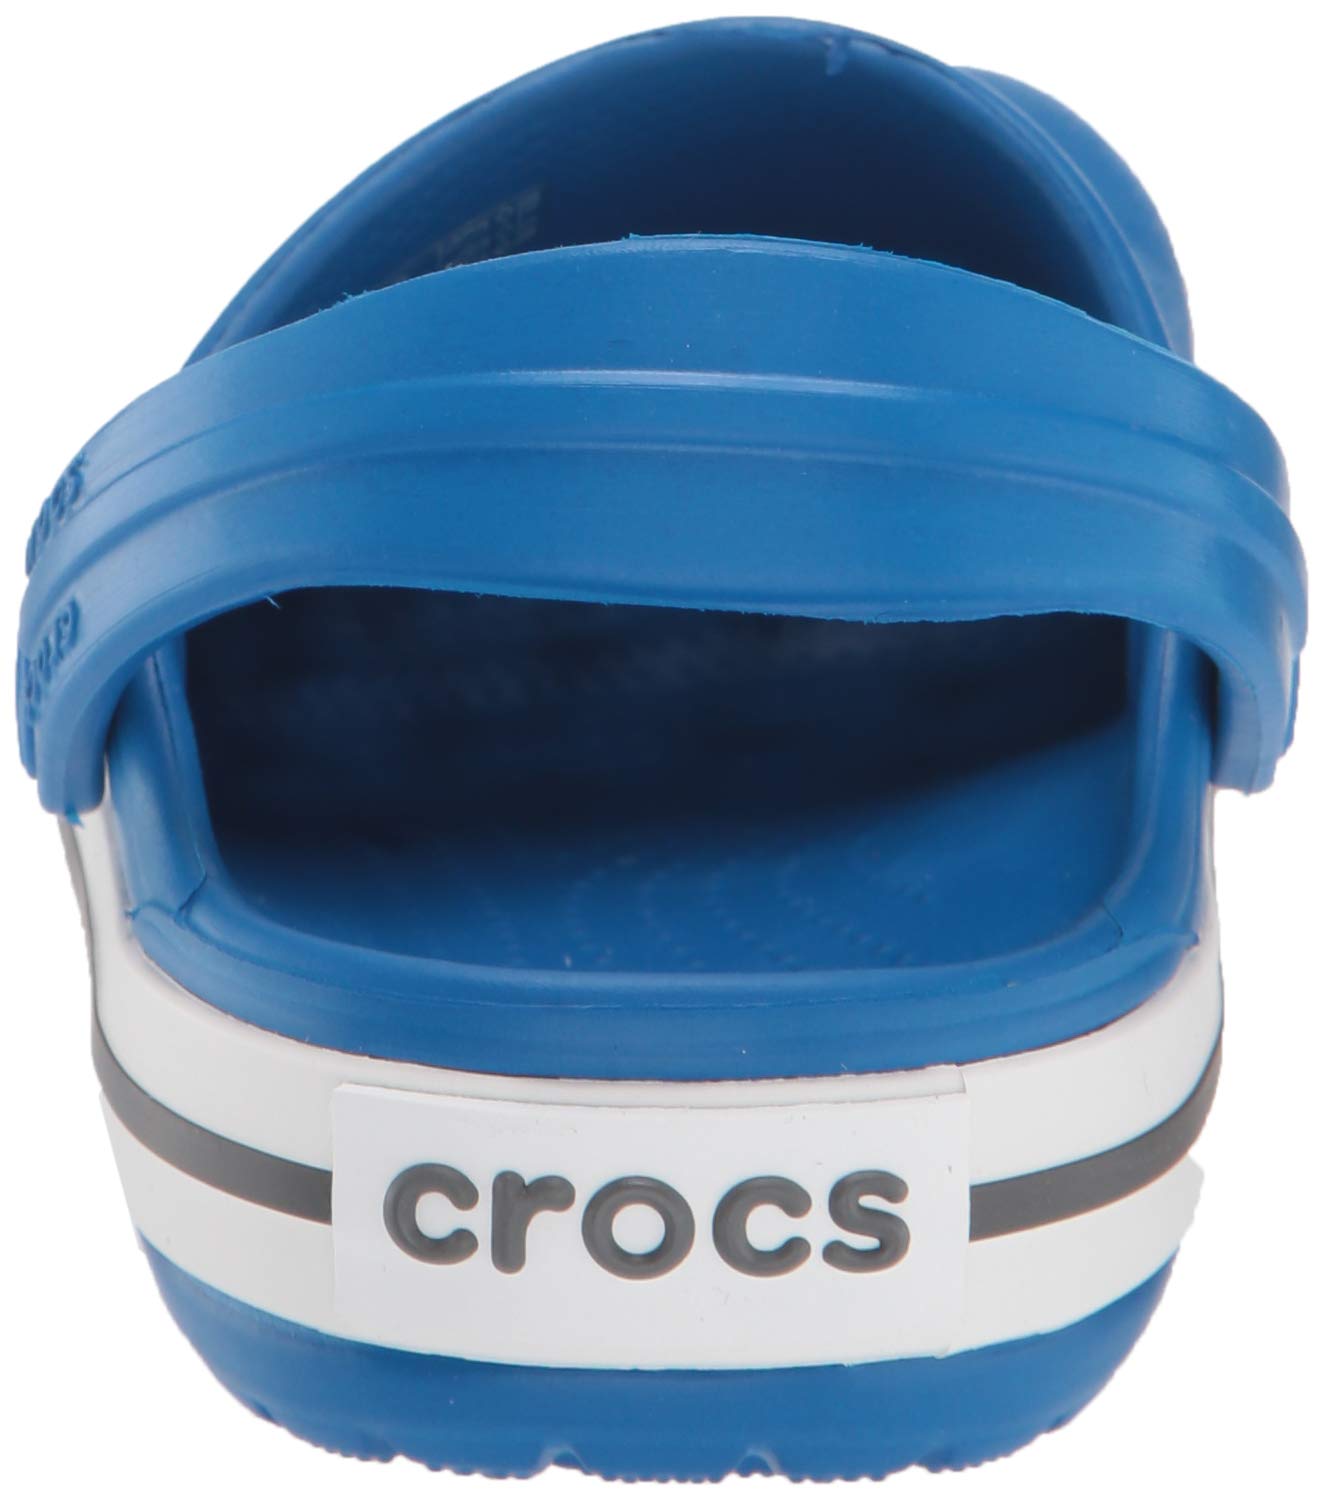 Crocs Kids' Crocband Clog , Bright Cobalt/Charcoal, 6 Big Kid